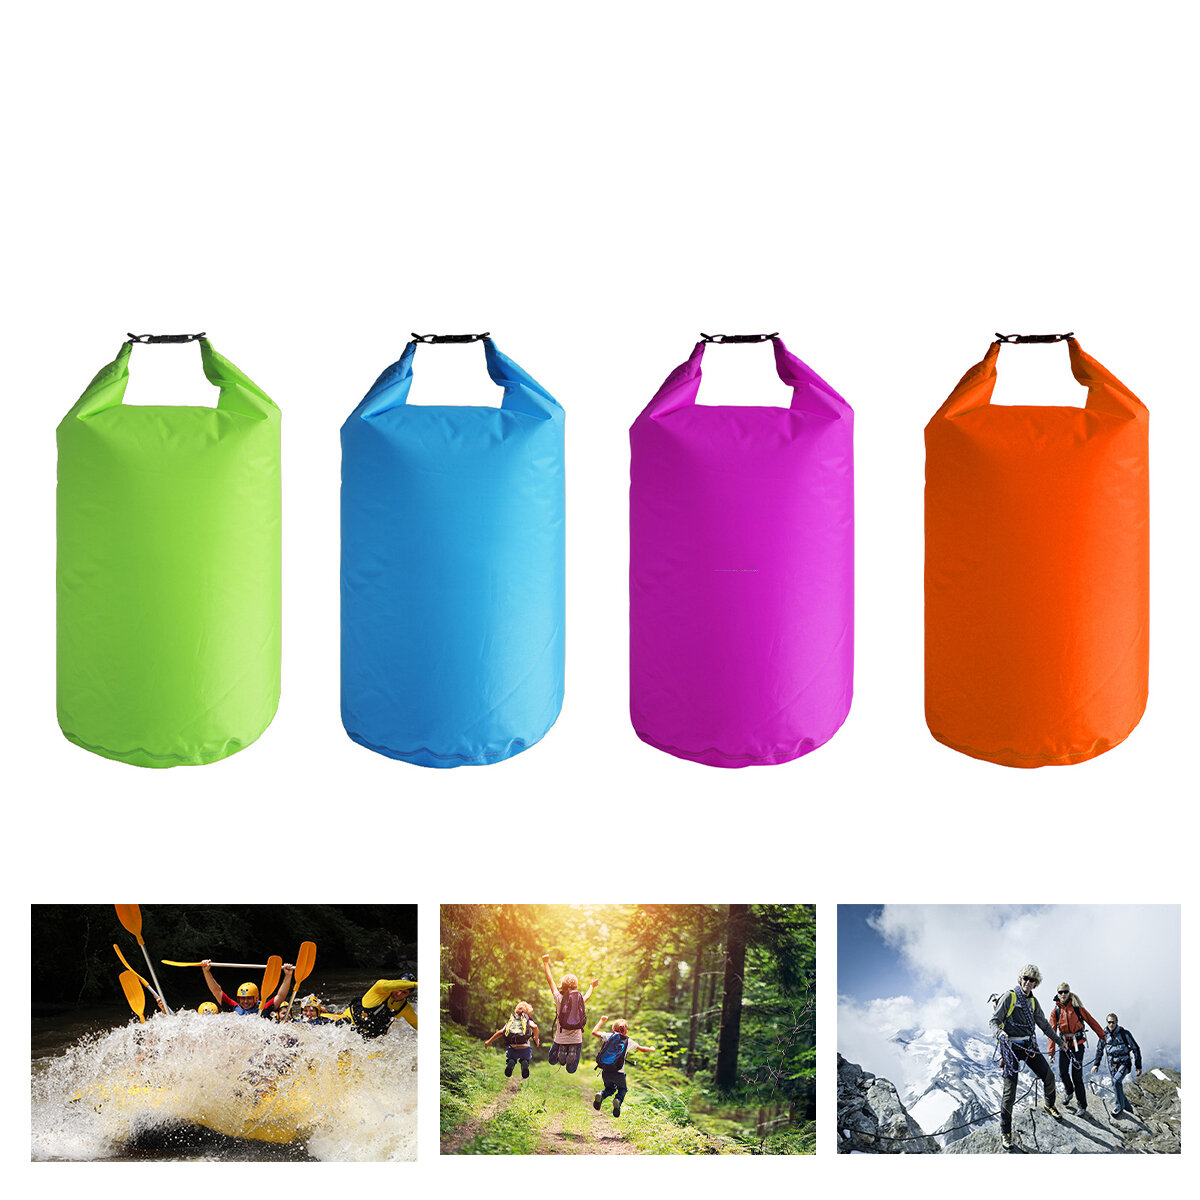 Bolsa de armazenamento flutuante de 10L para rolos à prova d'água, ideal para camping, viagens ao ar livre, caiaque, canoagem, pesca, vela e deriva.